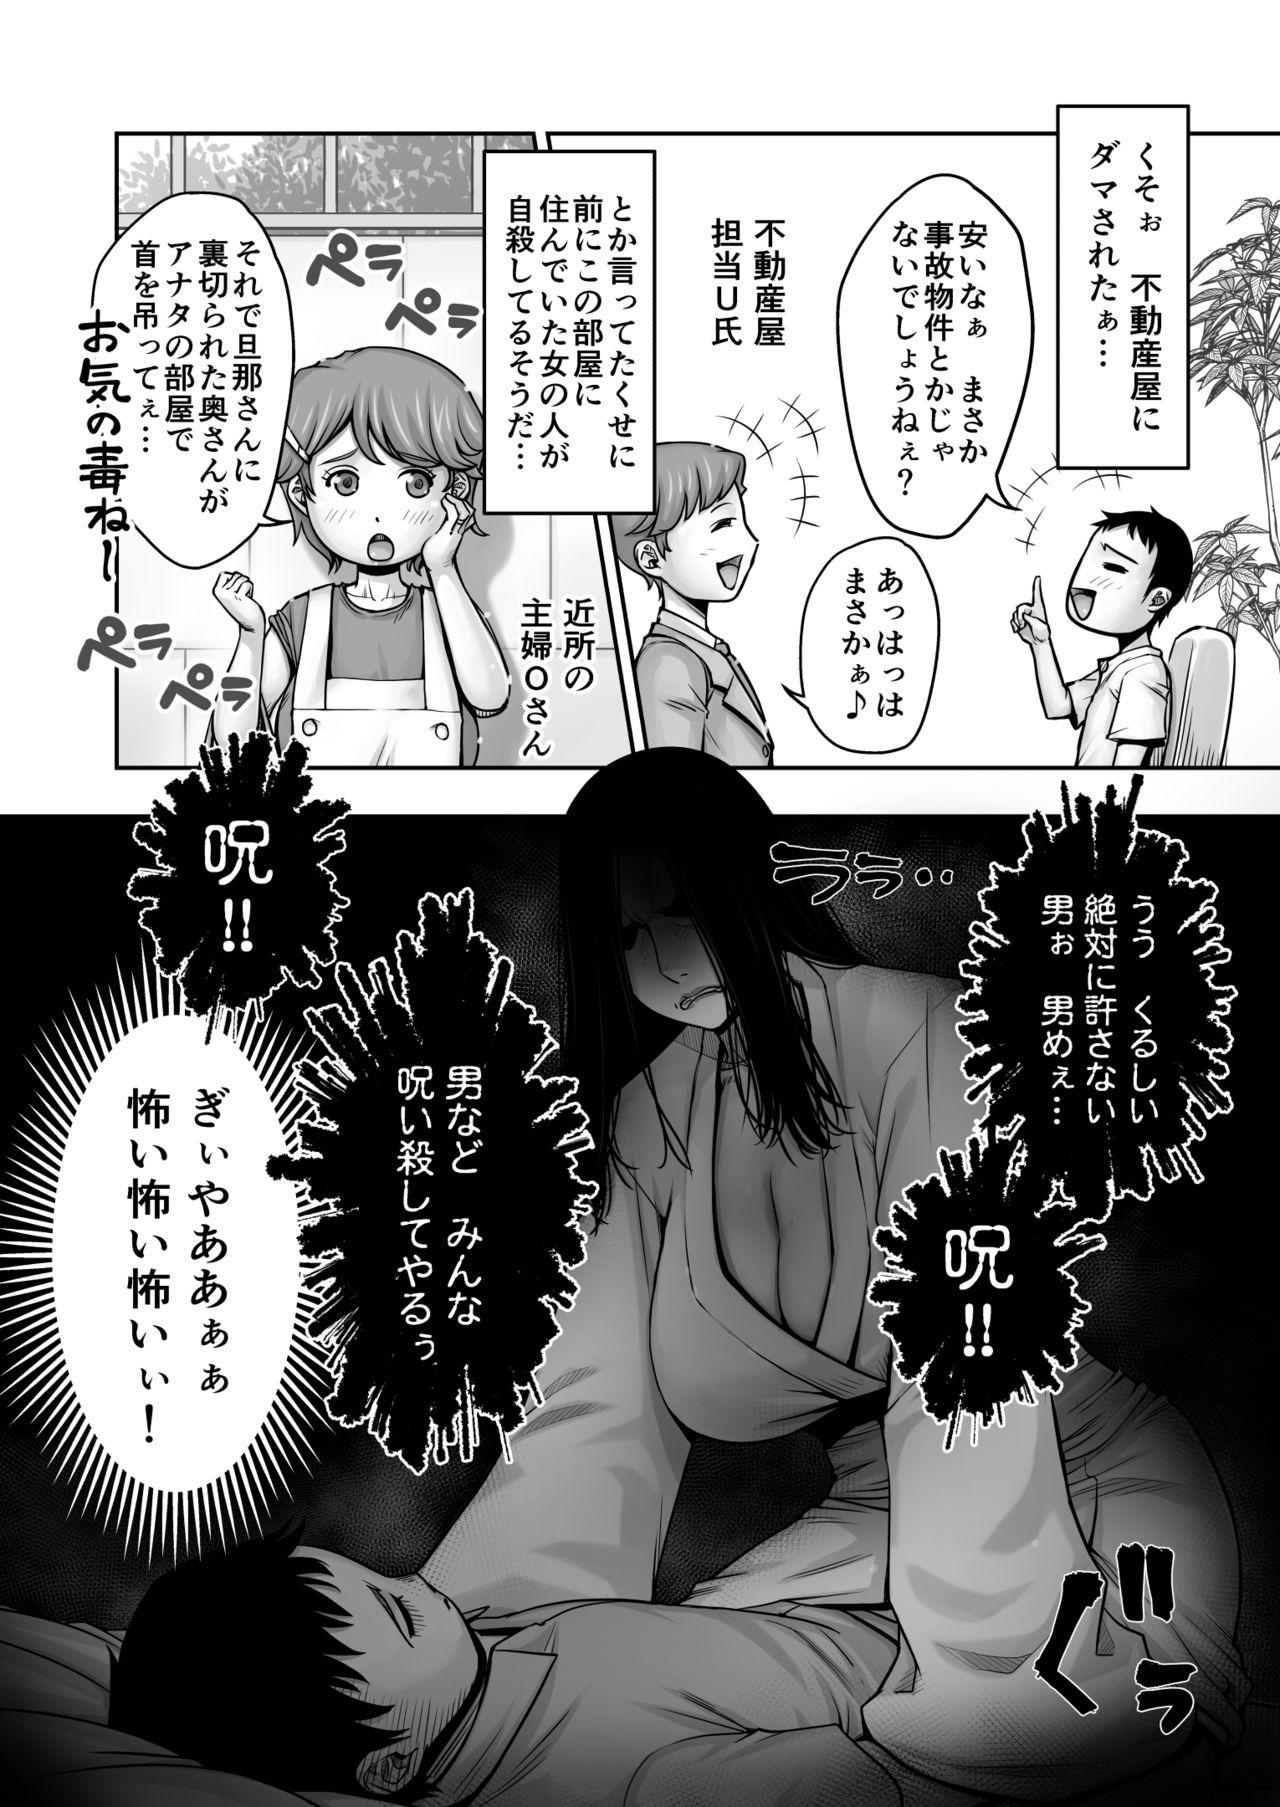 Hetero Dōtei ga heya ni tori tsuite iru on'na yūrei ni gyaku kanashibari o kaketa kekka - Original Sex - Page 3